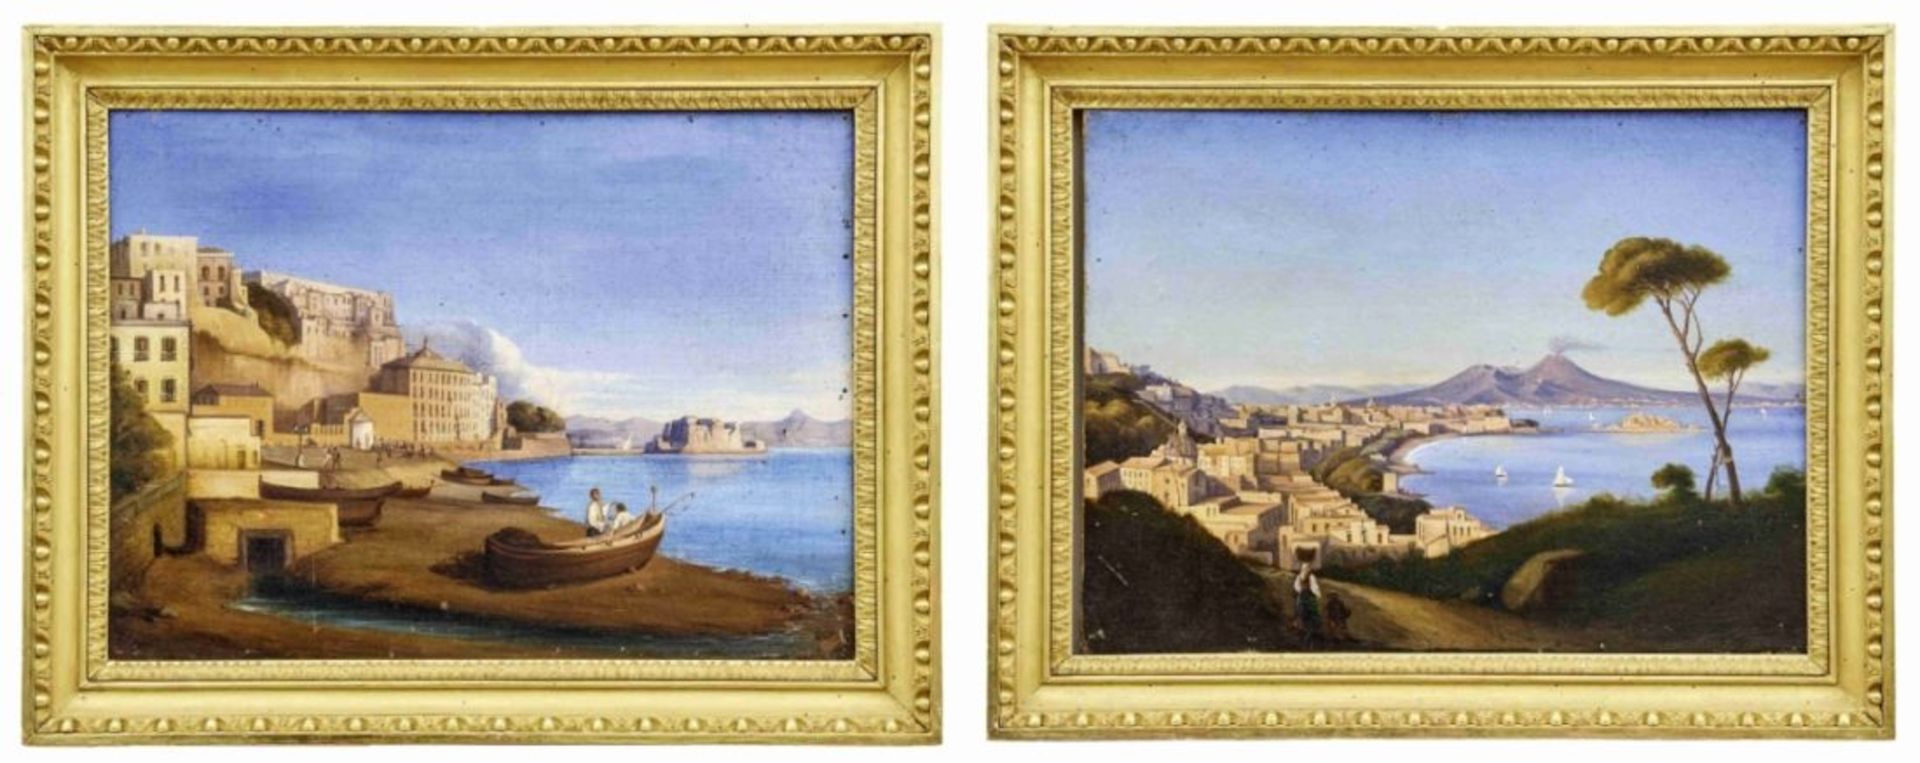 Zwei Ansichten von Neapel, Neapolitanischer Maler des 19. Jahrhunderts